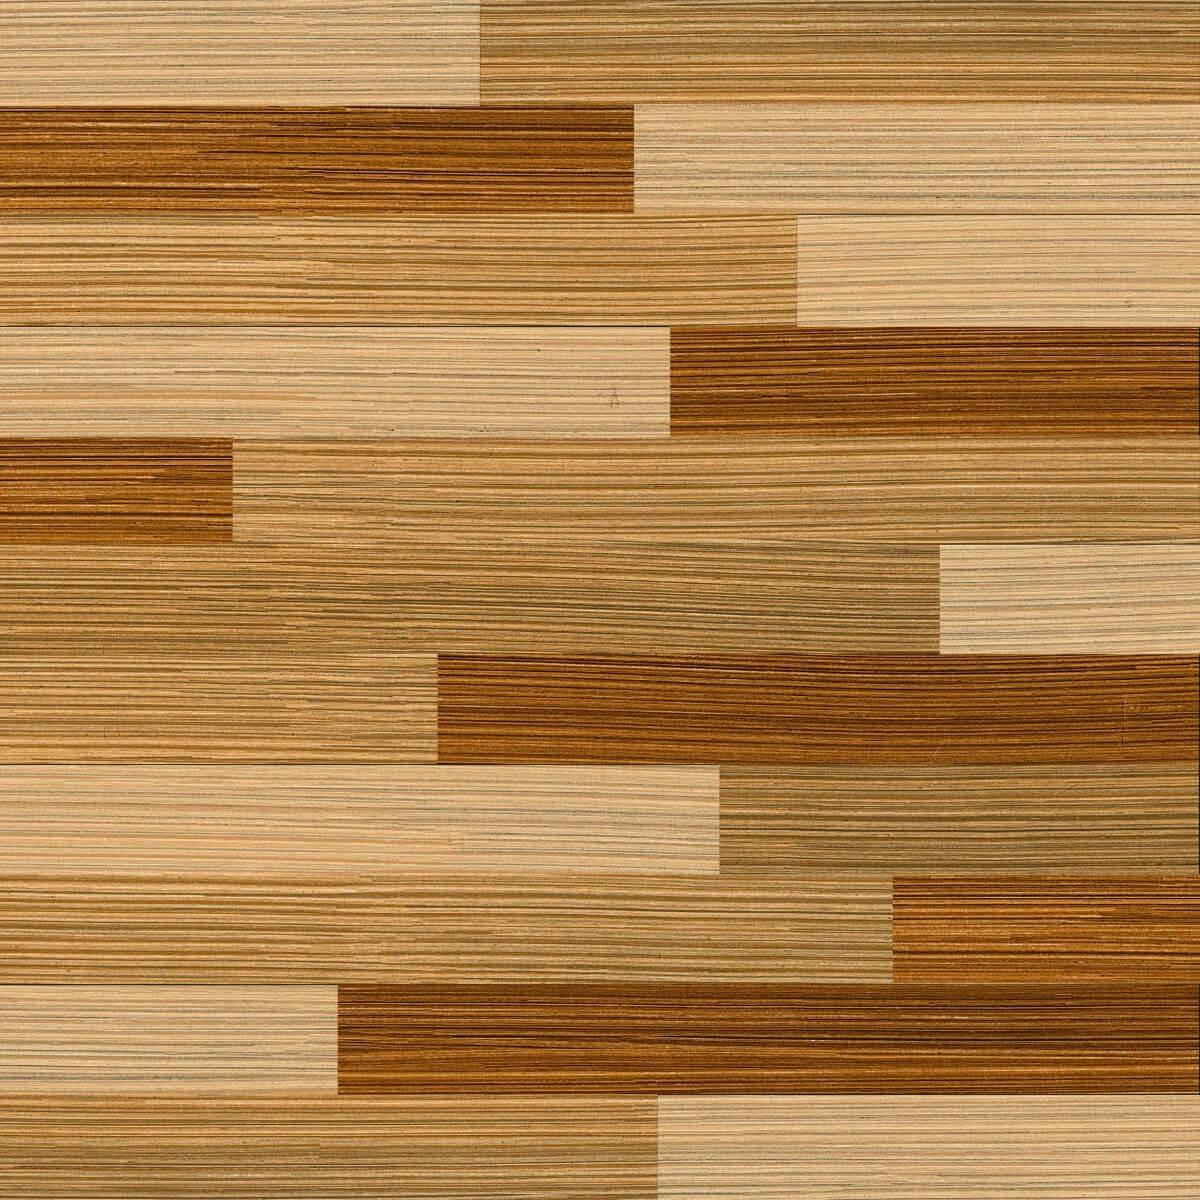 Wooden Tiles for Bathroom Tiles, Kitchen Tiles, Dining Room Tiles